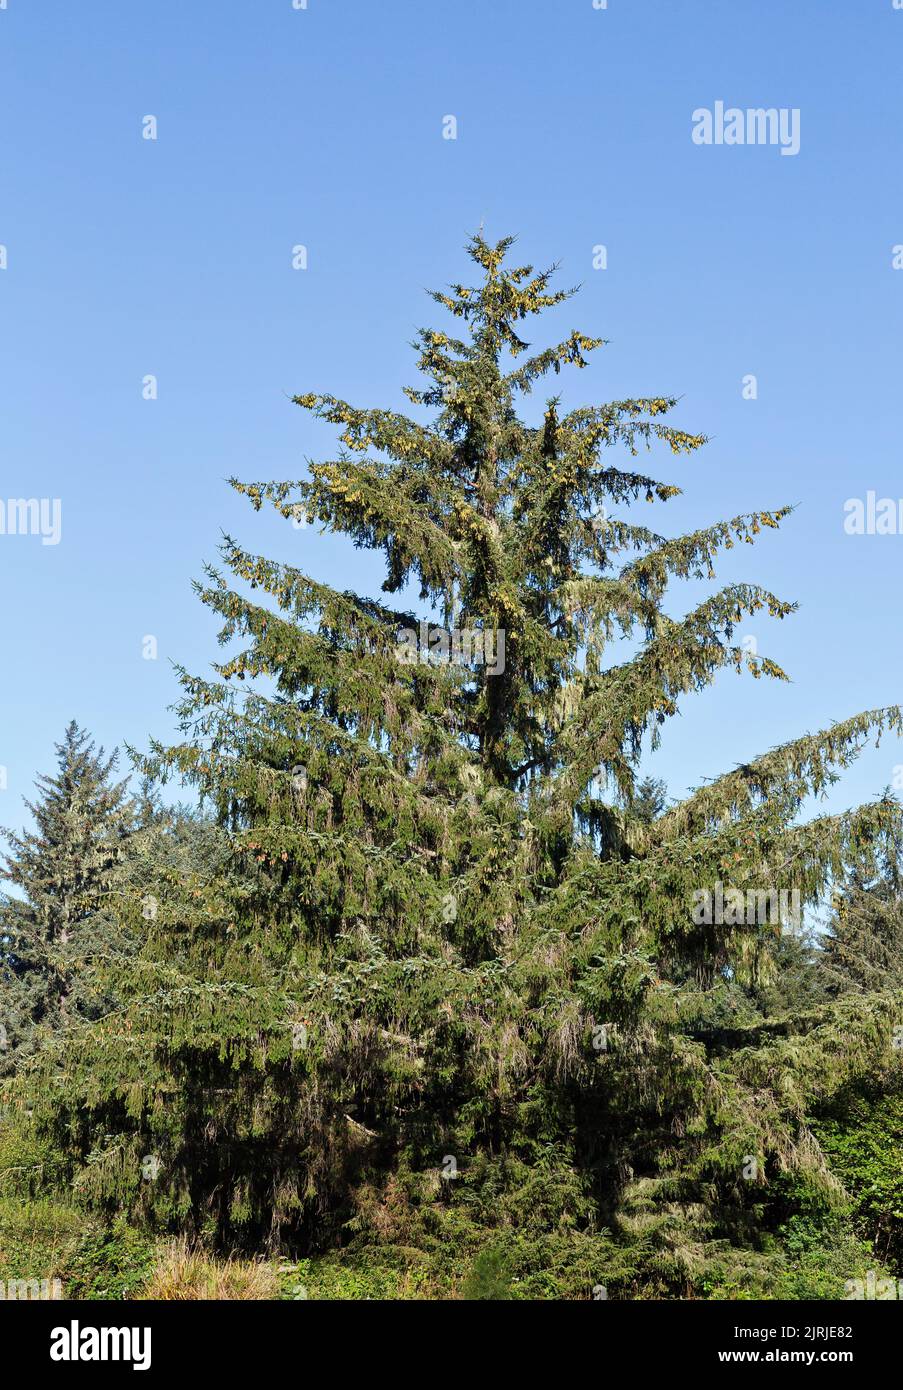 Épinette de Sitka 'Picea sitchensis', cônes femelles et mâles matures, conifères, arbres à feuilles persistantes. Banque D'Images